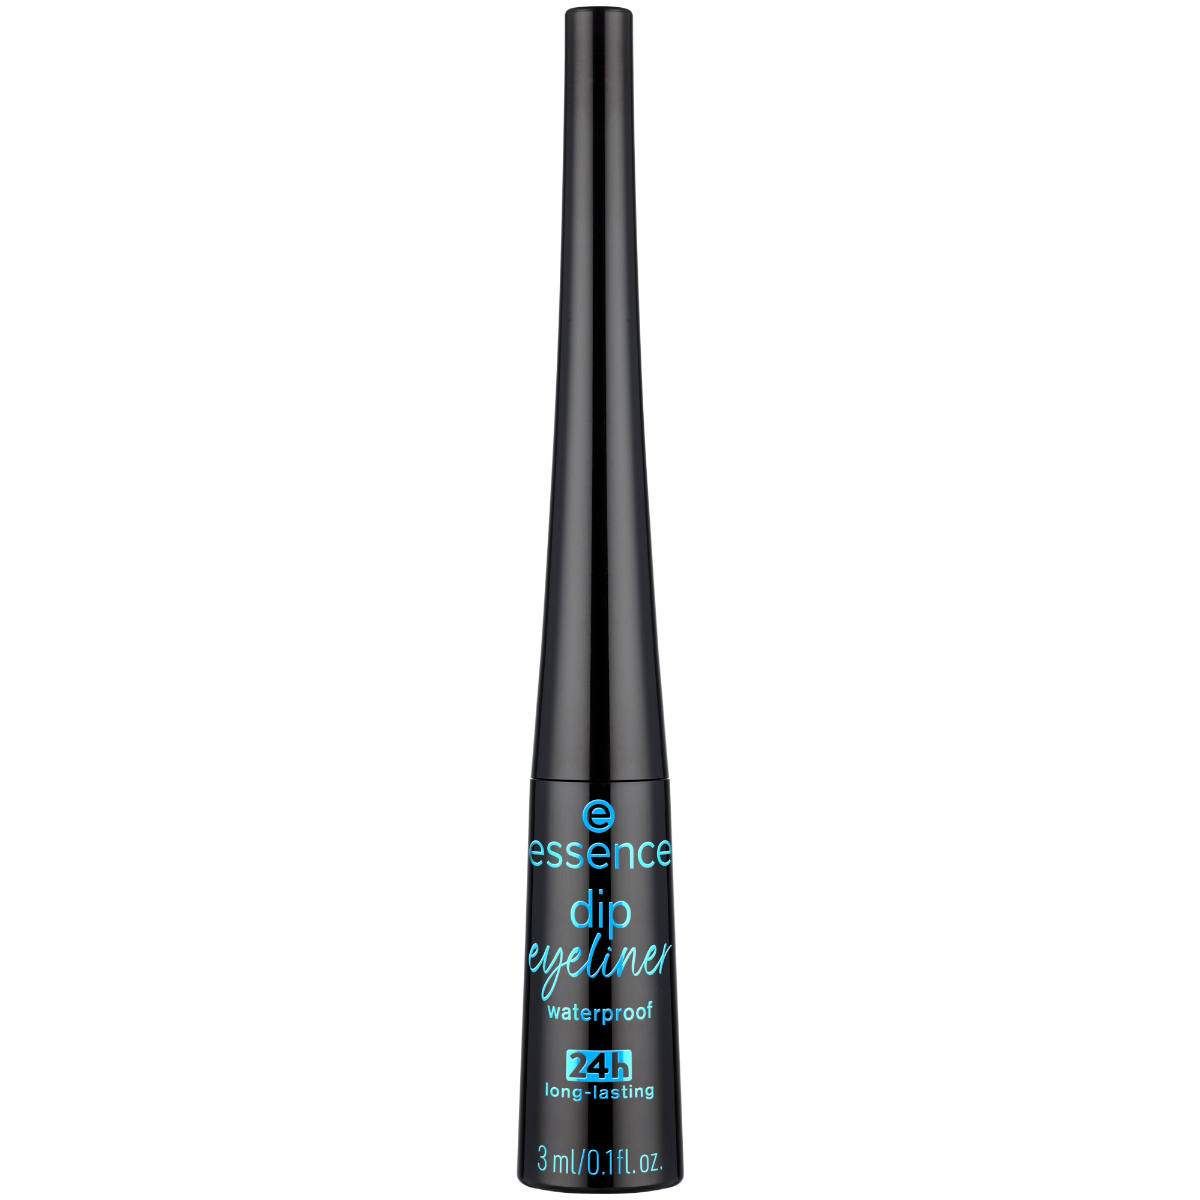 Essence Dip 24h long-lasting waterproof - eyeliner 01 3ml